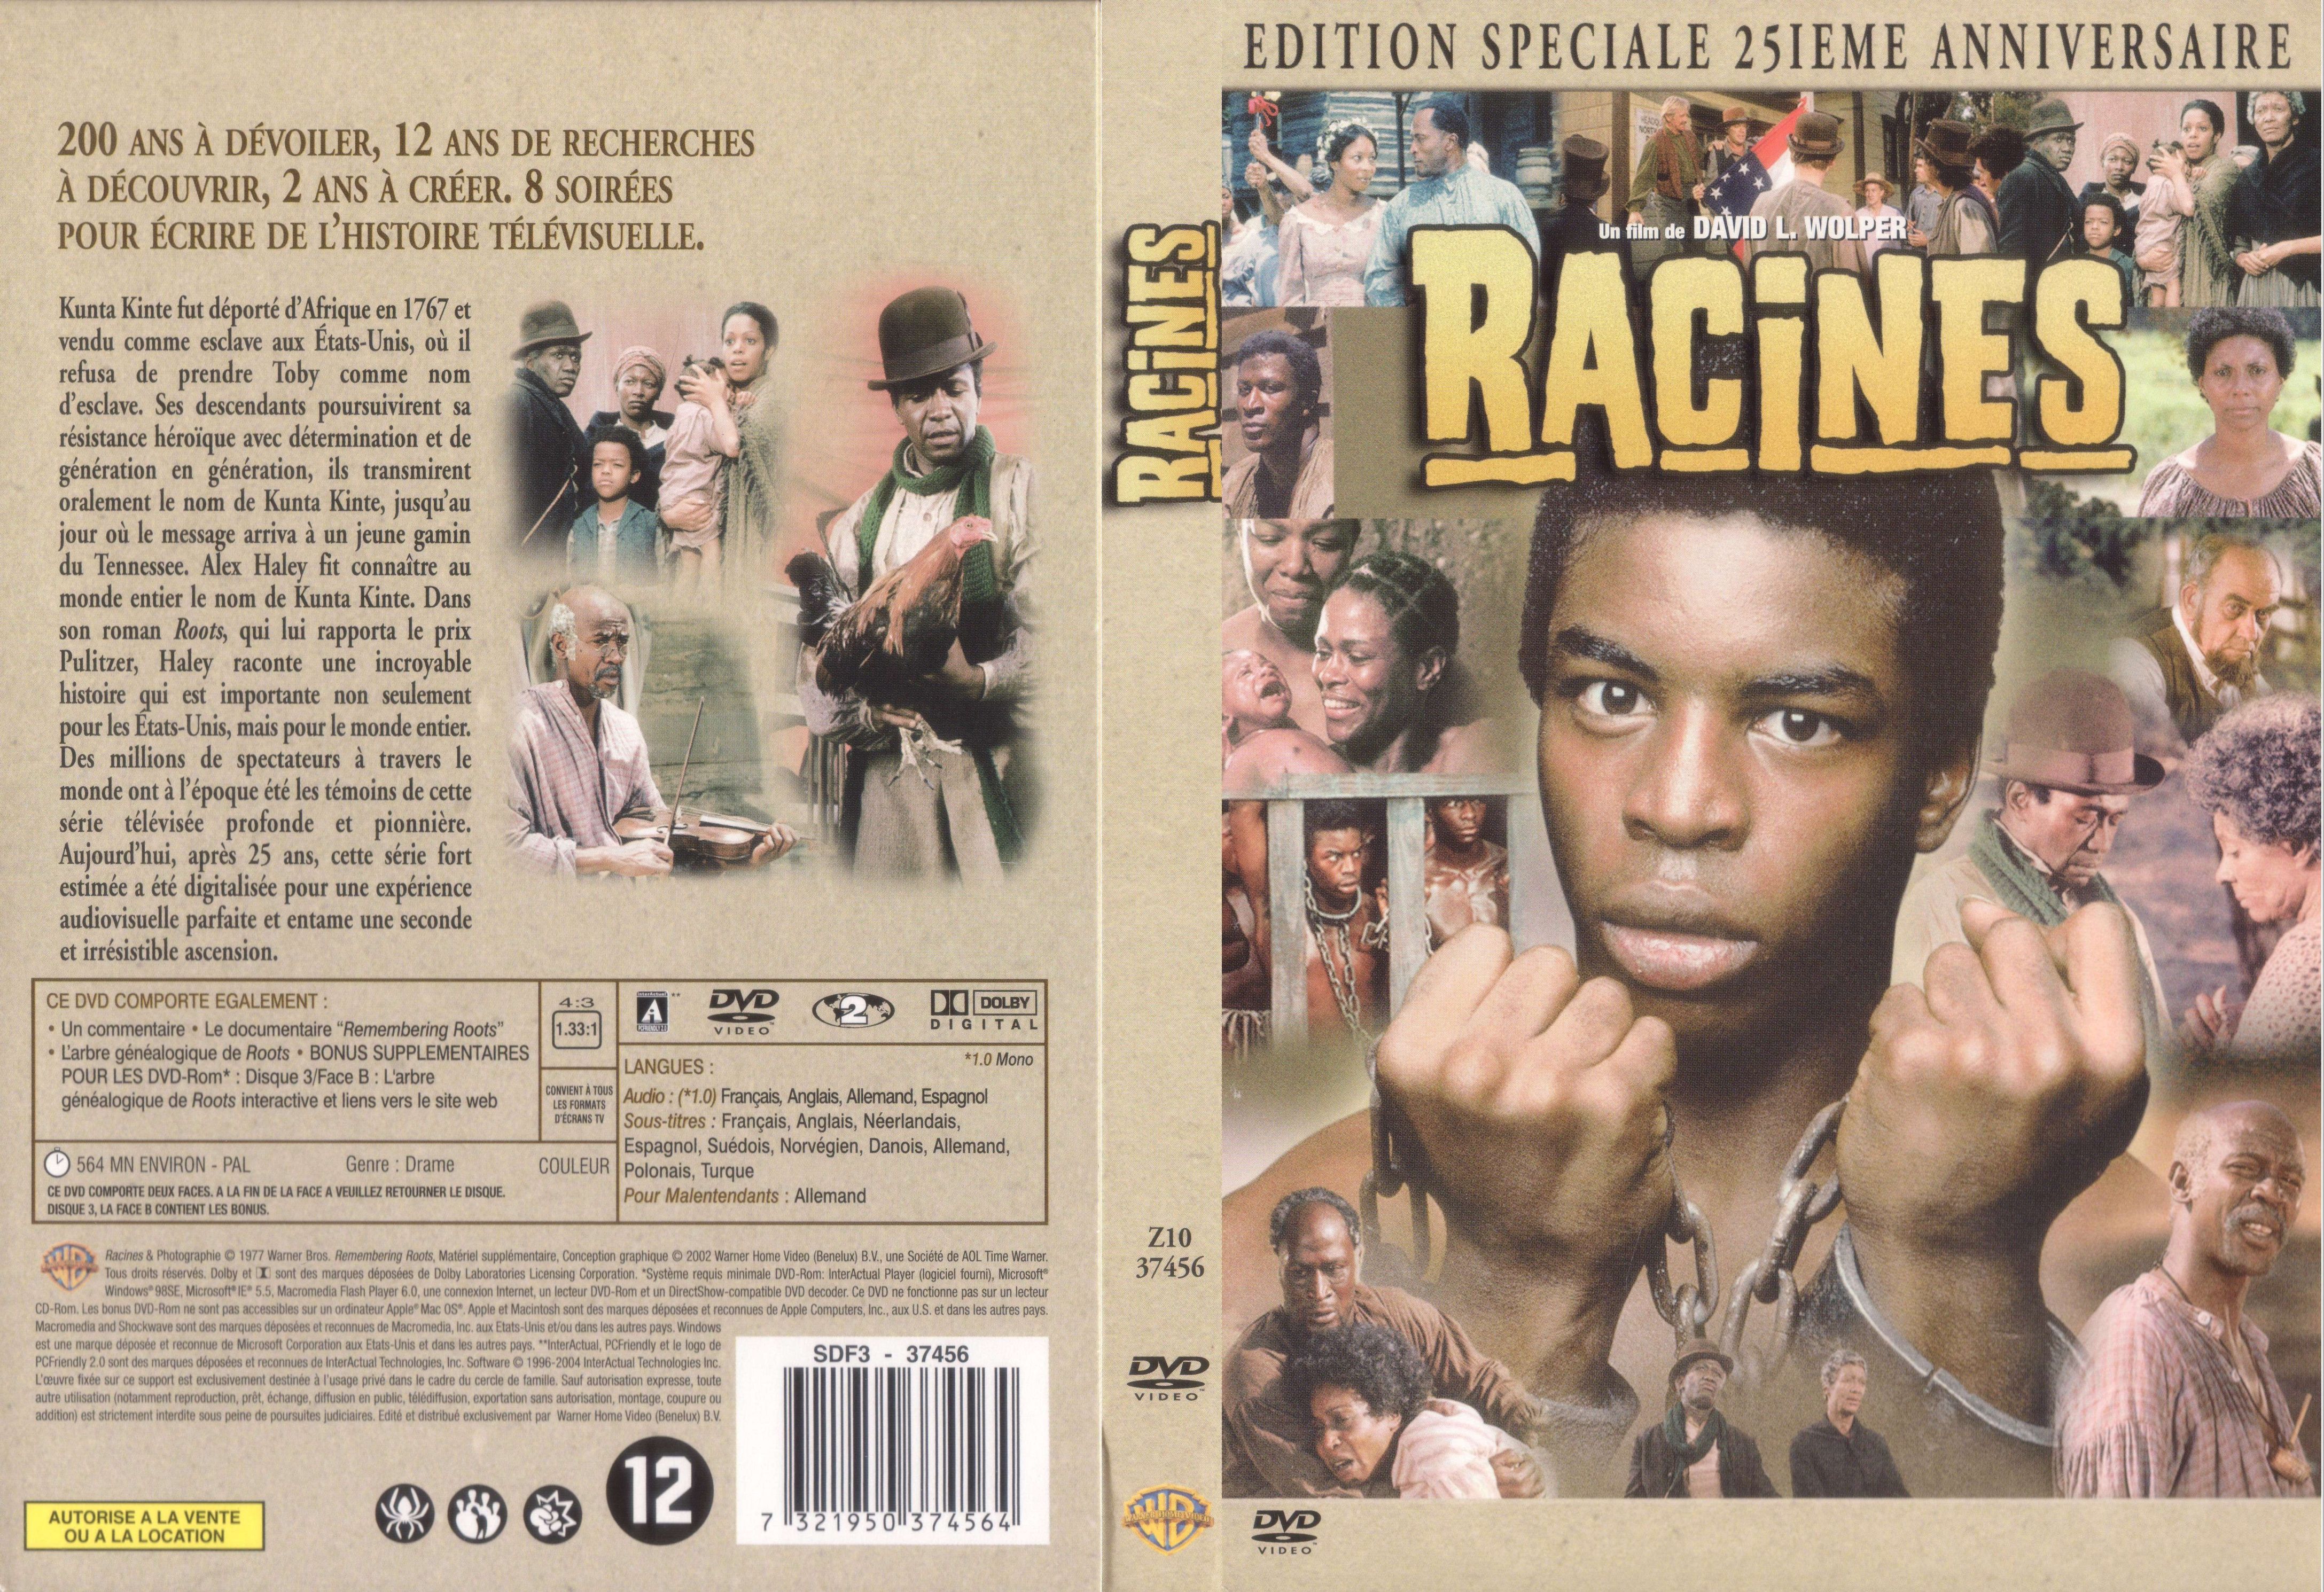 Jaquette DVD Racines v2